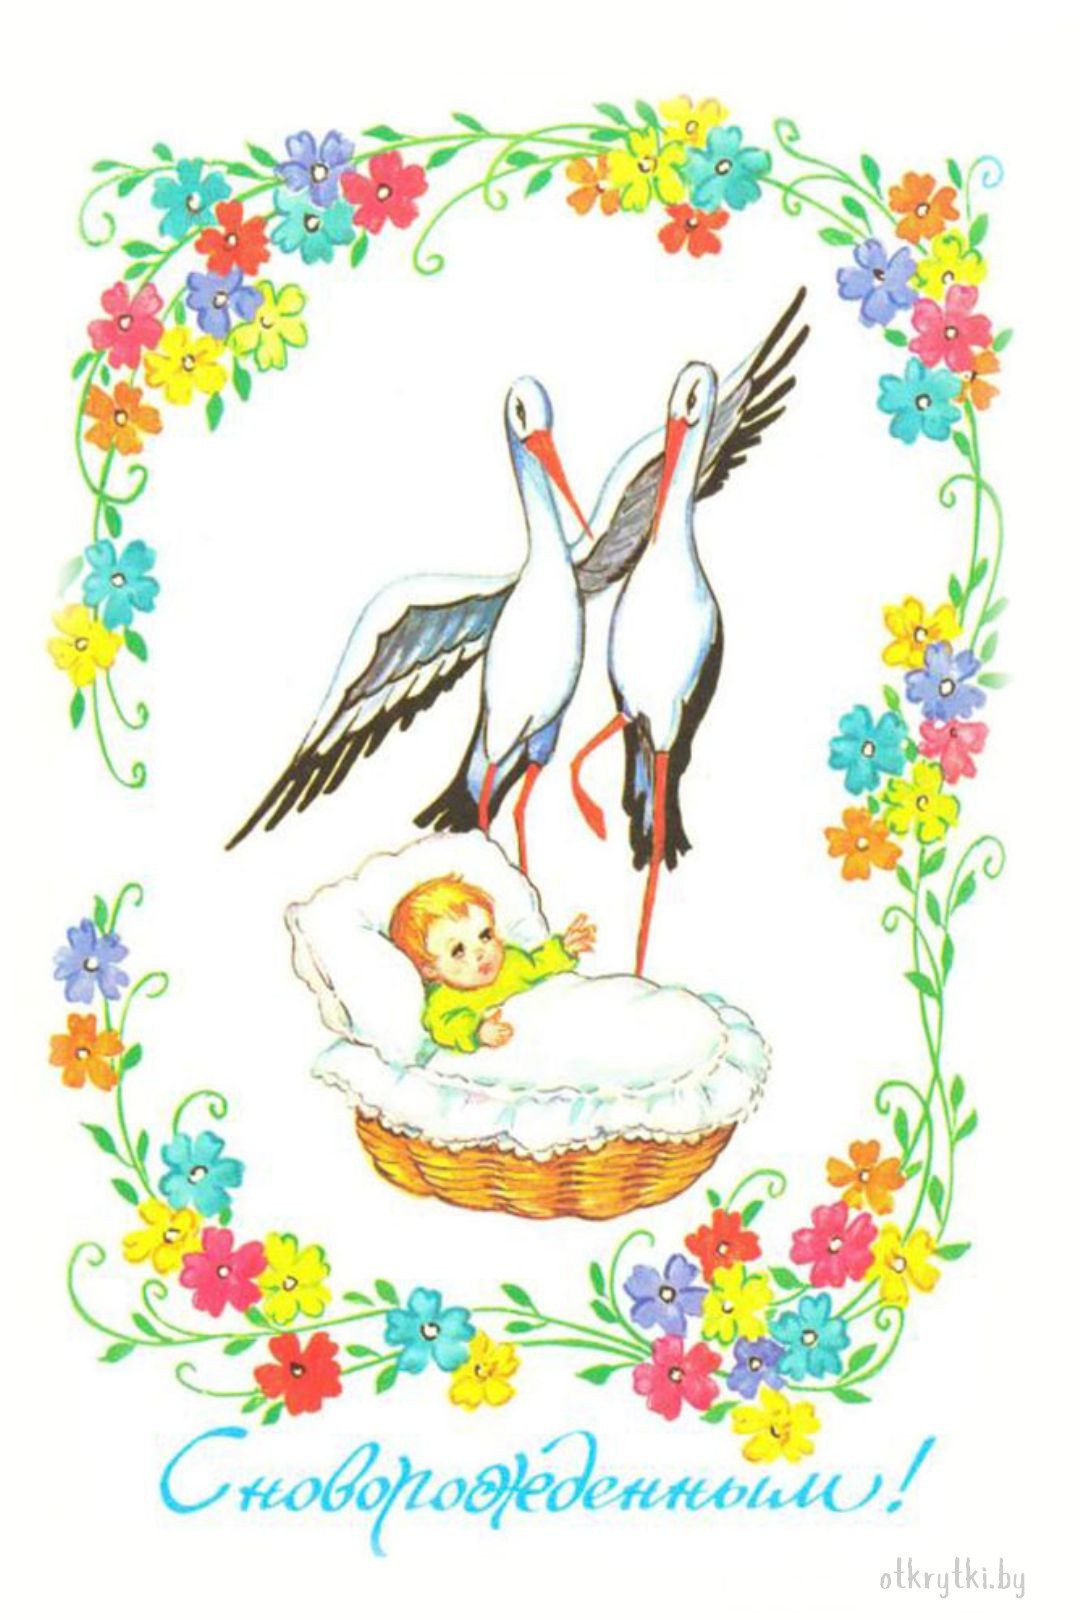 Советская открытка с новорожденным